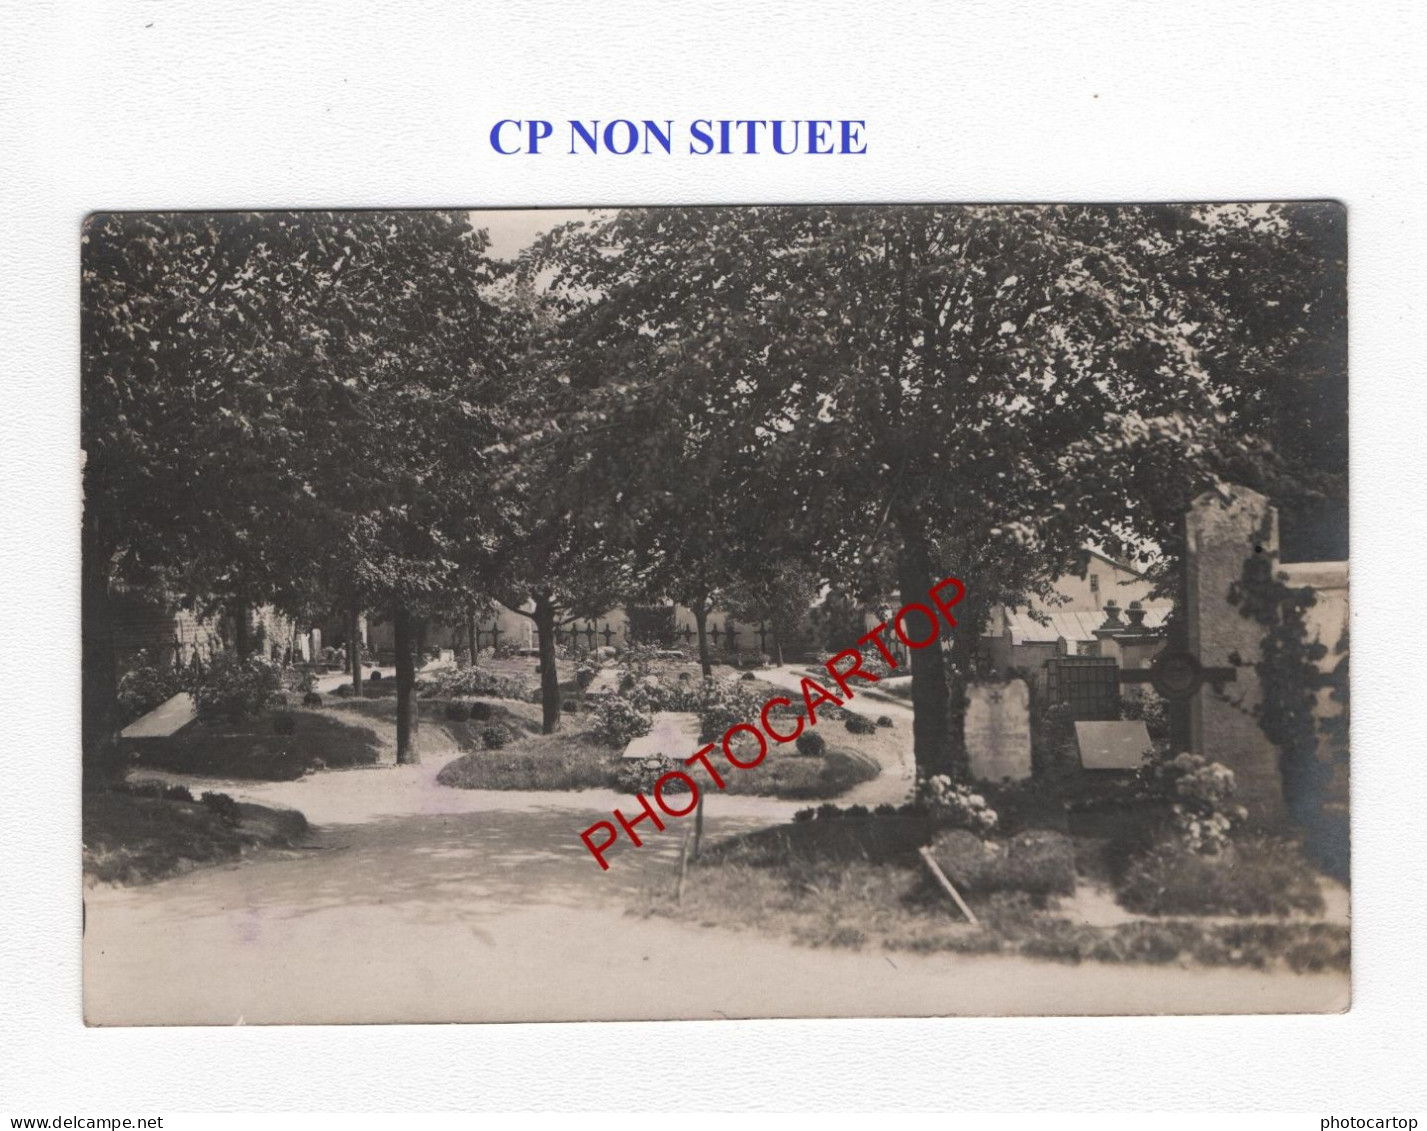 CP NON SITUEE-CIMETIERE-Friedhof-Tombes-CARTE PHOTO Allemande-GUERRE 14-18-1 WK-Militaria- - Soldatenfriedhöfen